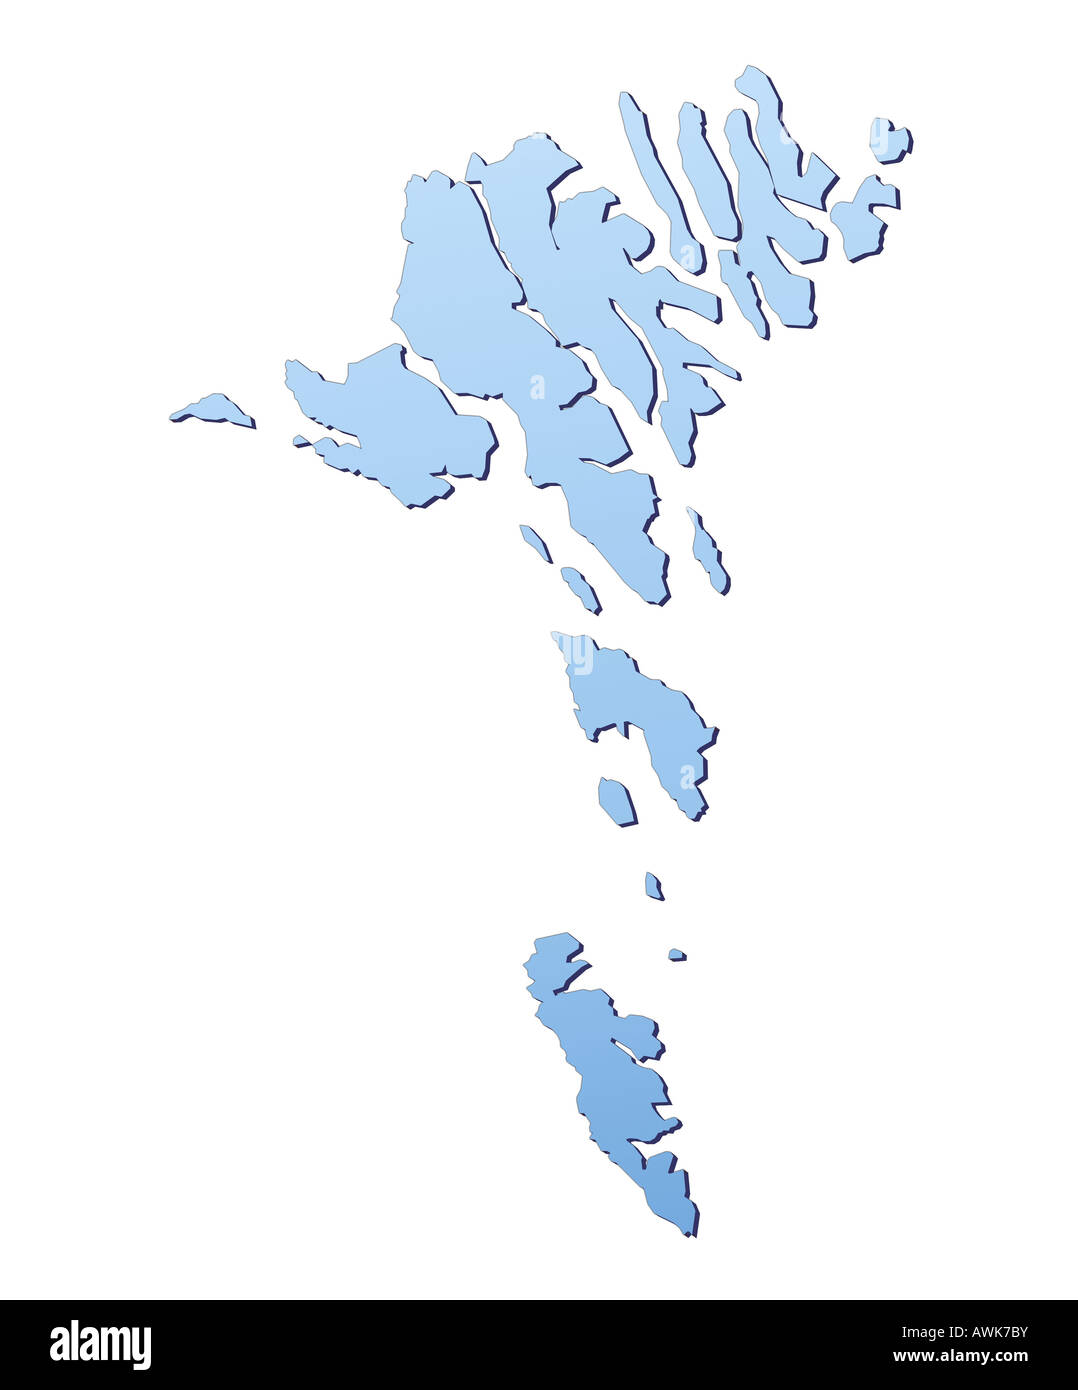 фарерские острова на карте